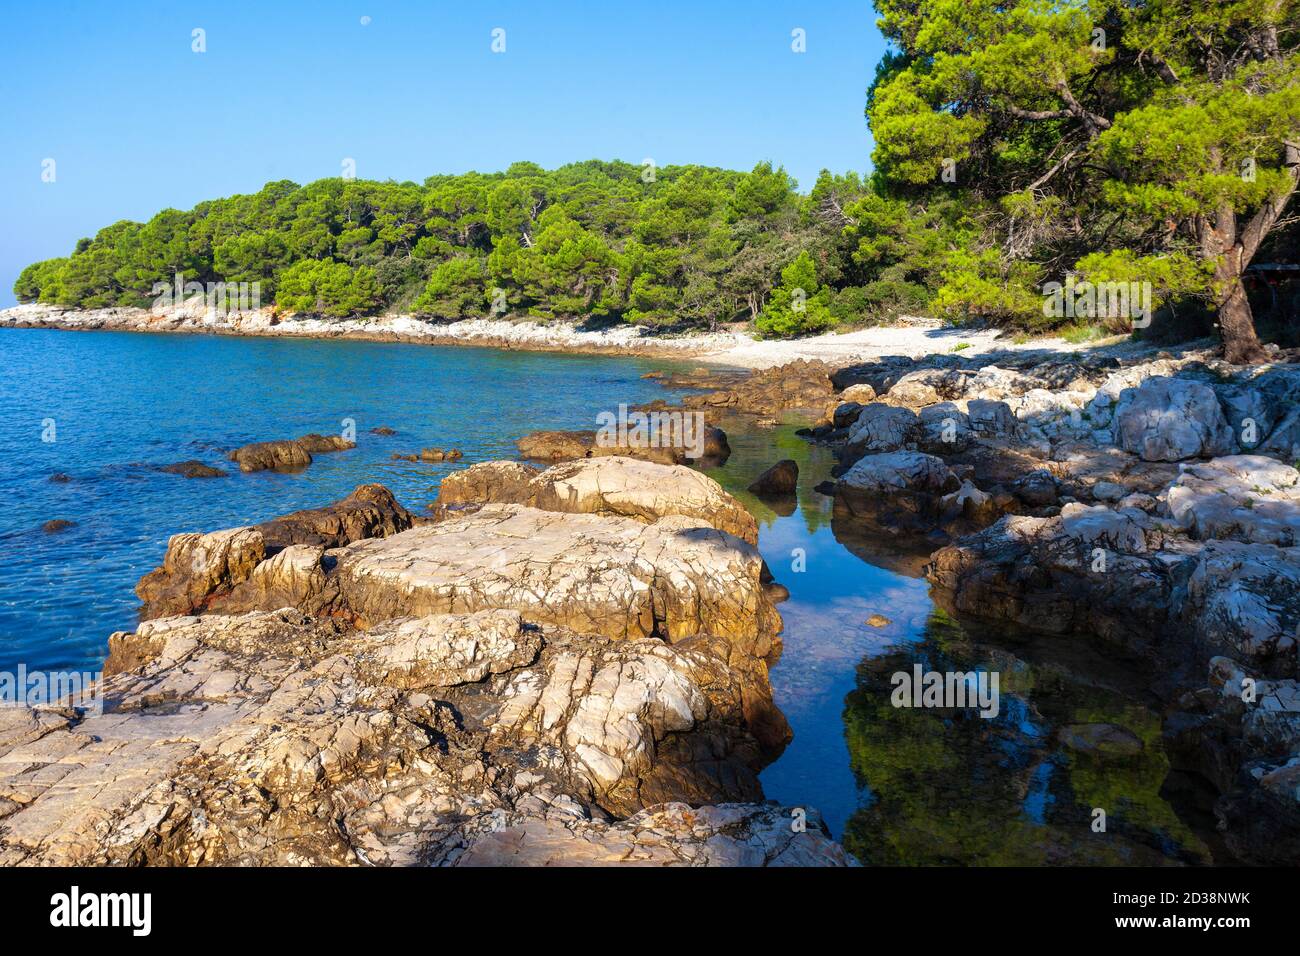 The natural beach Zlatni rt (Golden Cape) in Rovinj town, Croatia Stock  Photo - Alamy